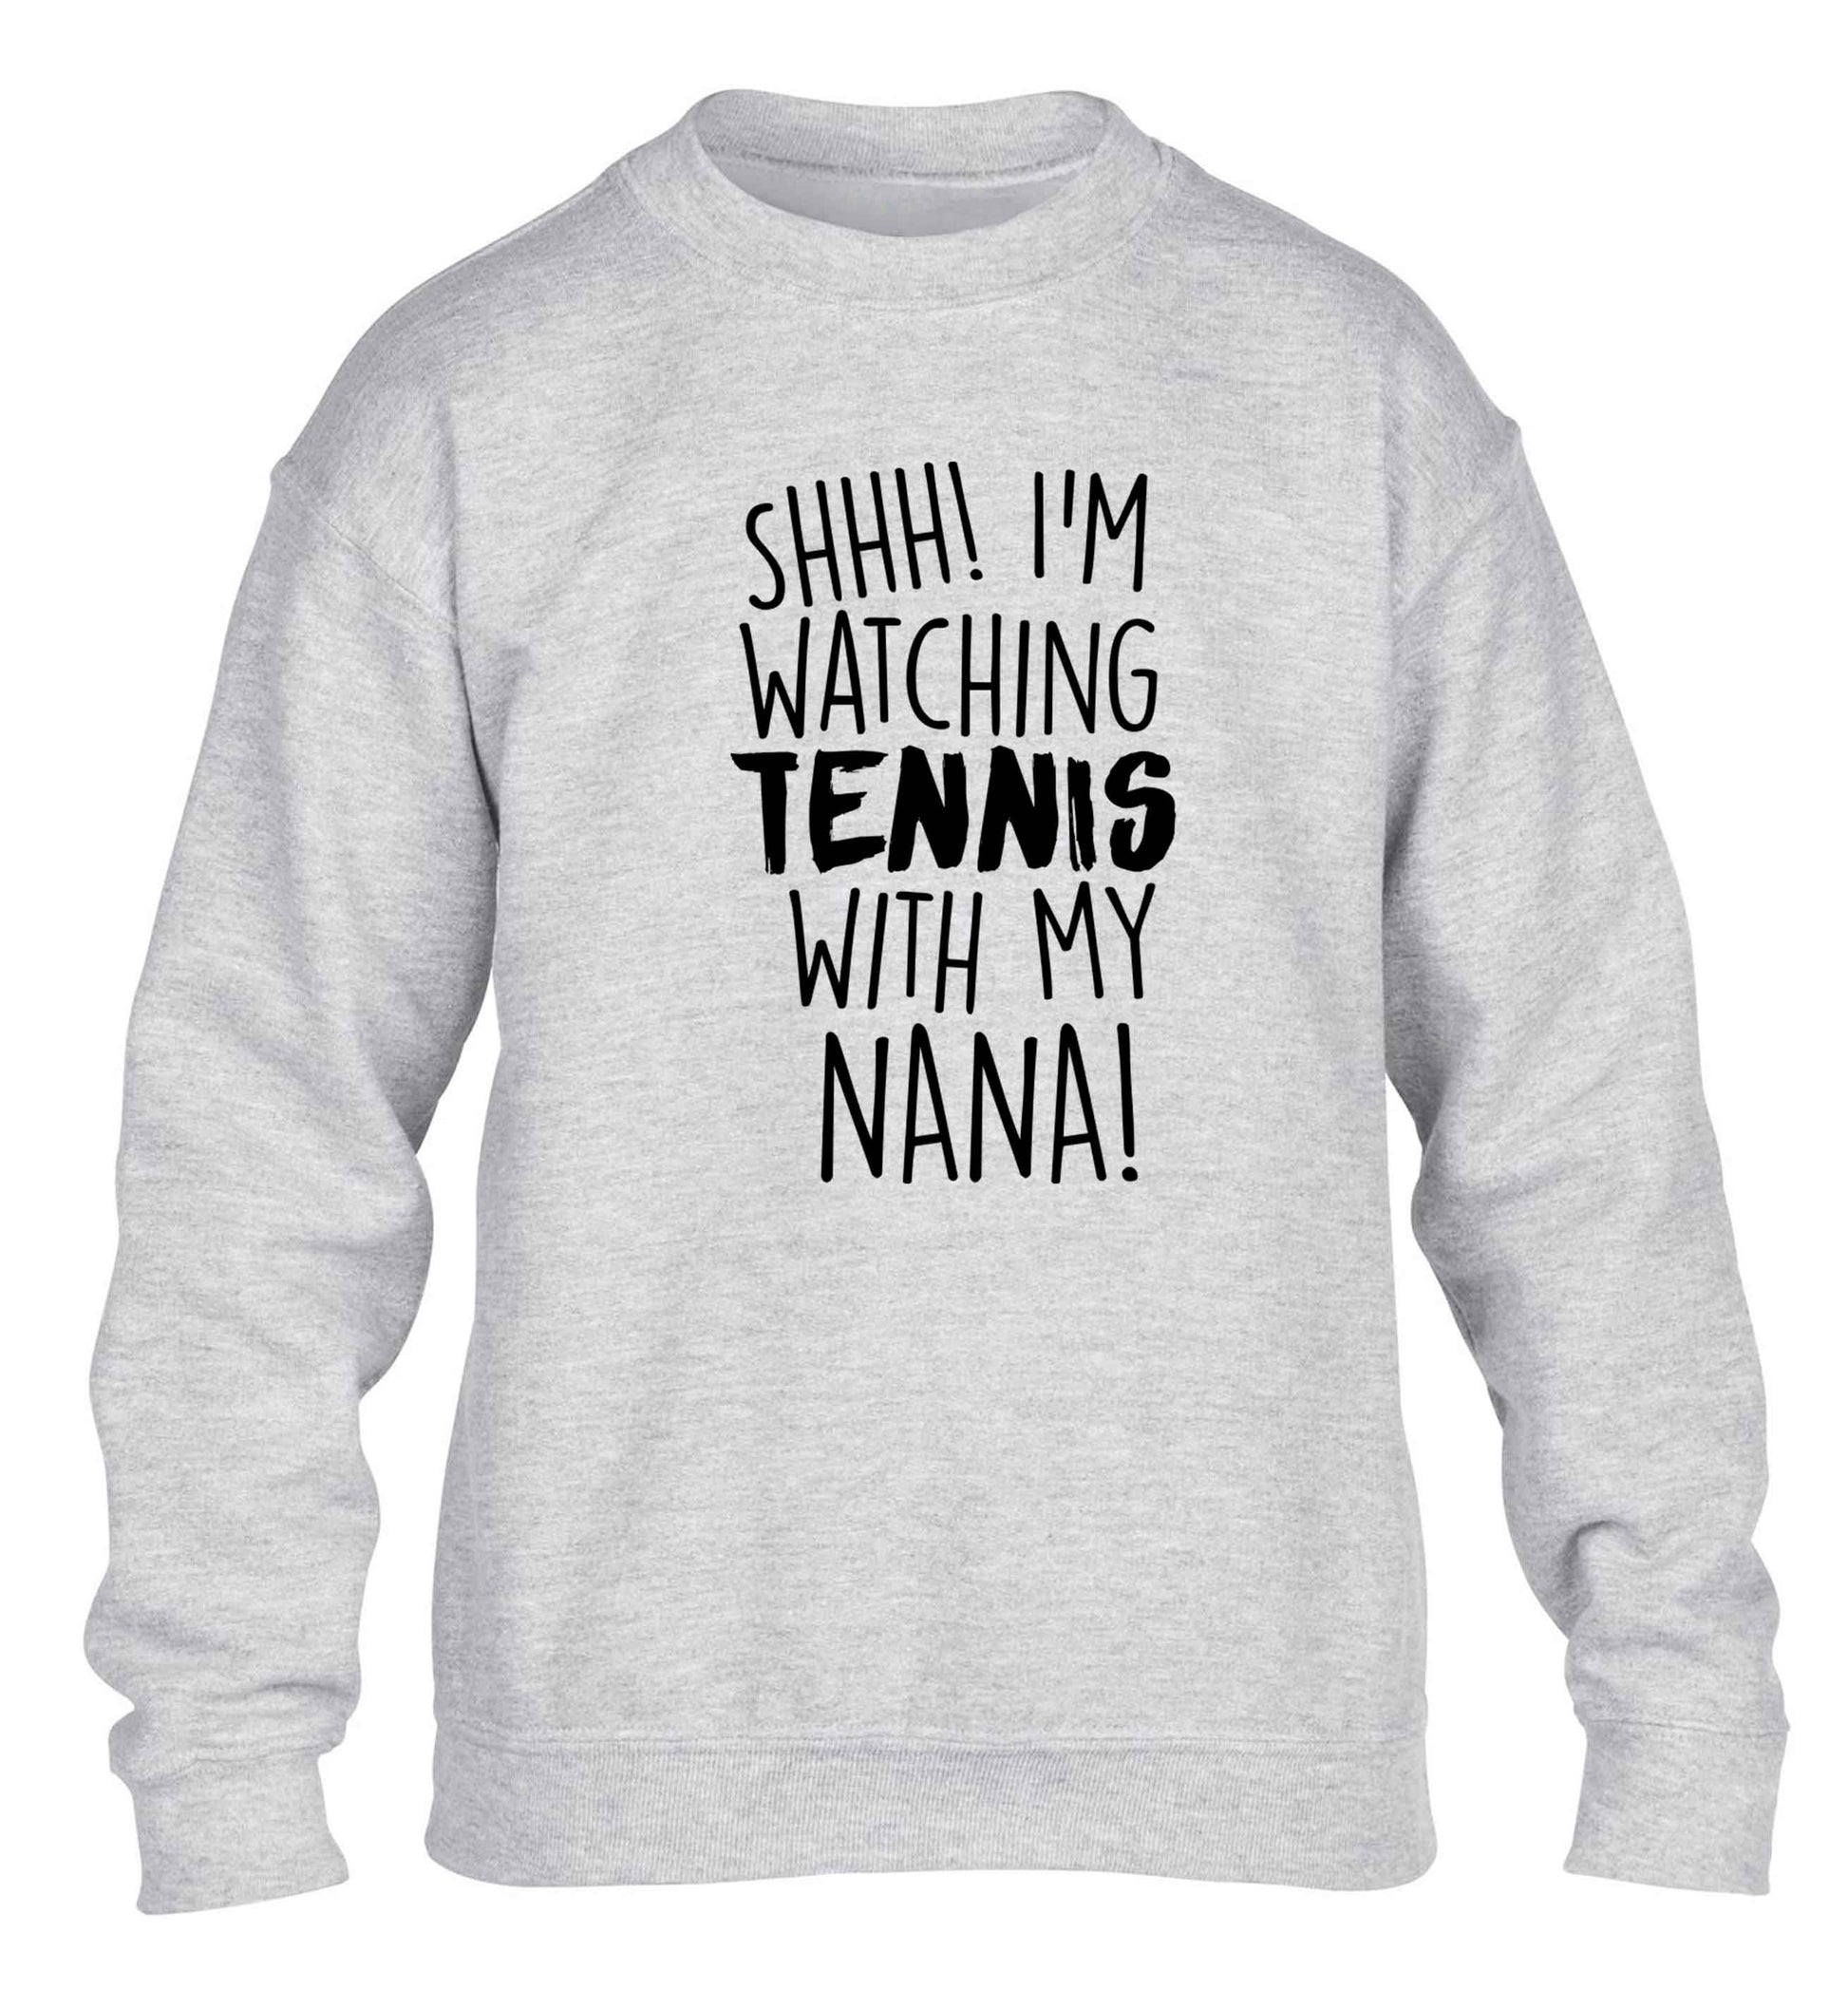 Shh! I'm watching tennis with my nana! children's grey sweater 12-13 Years